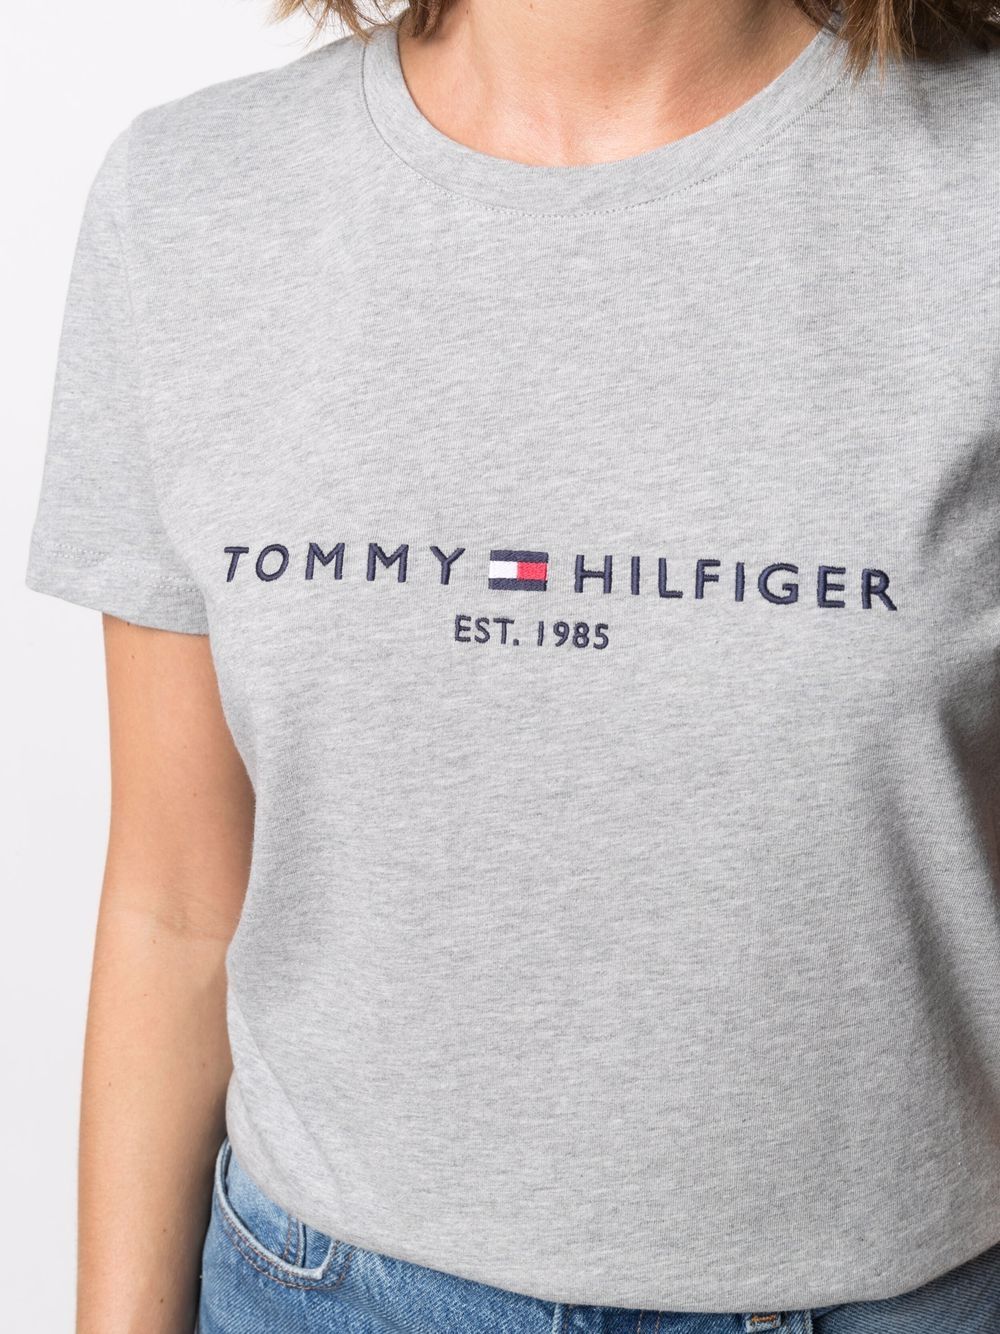 фото Tommy hilfiger футболка с логотипом